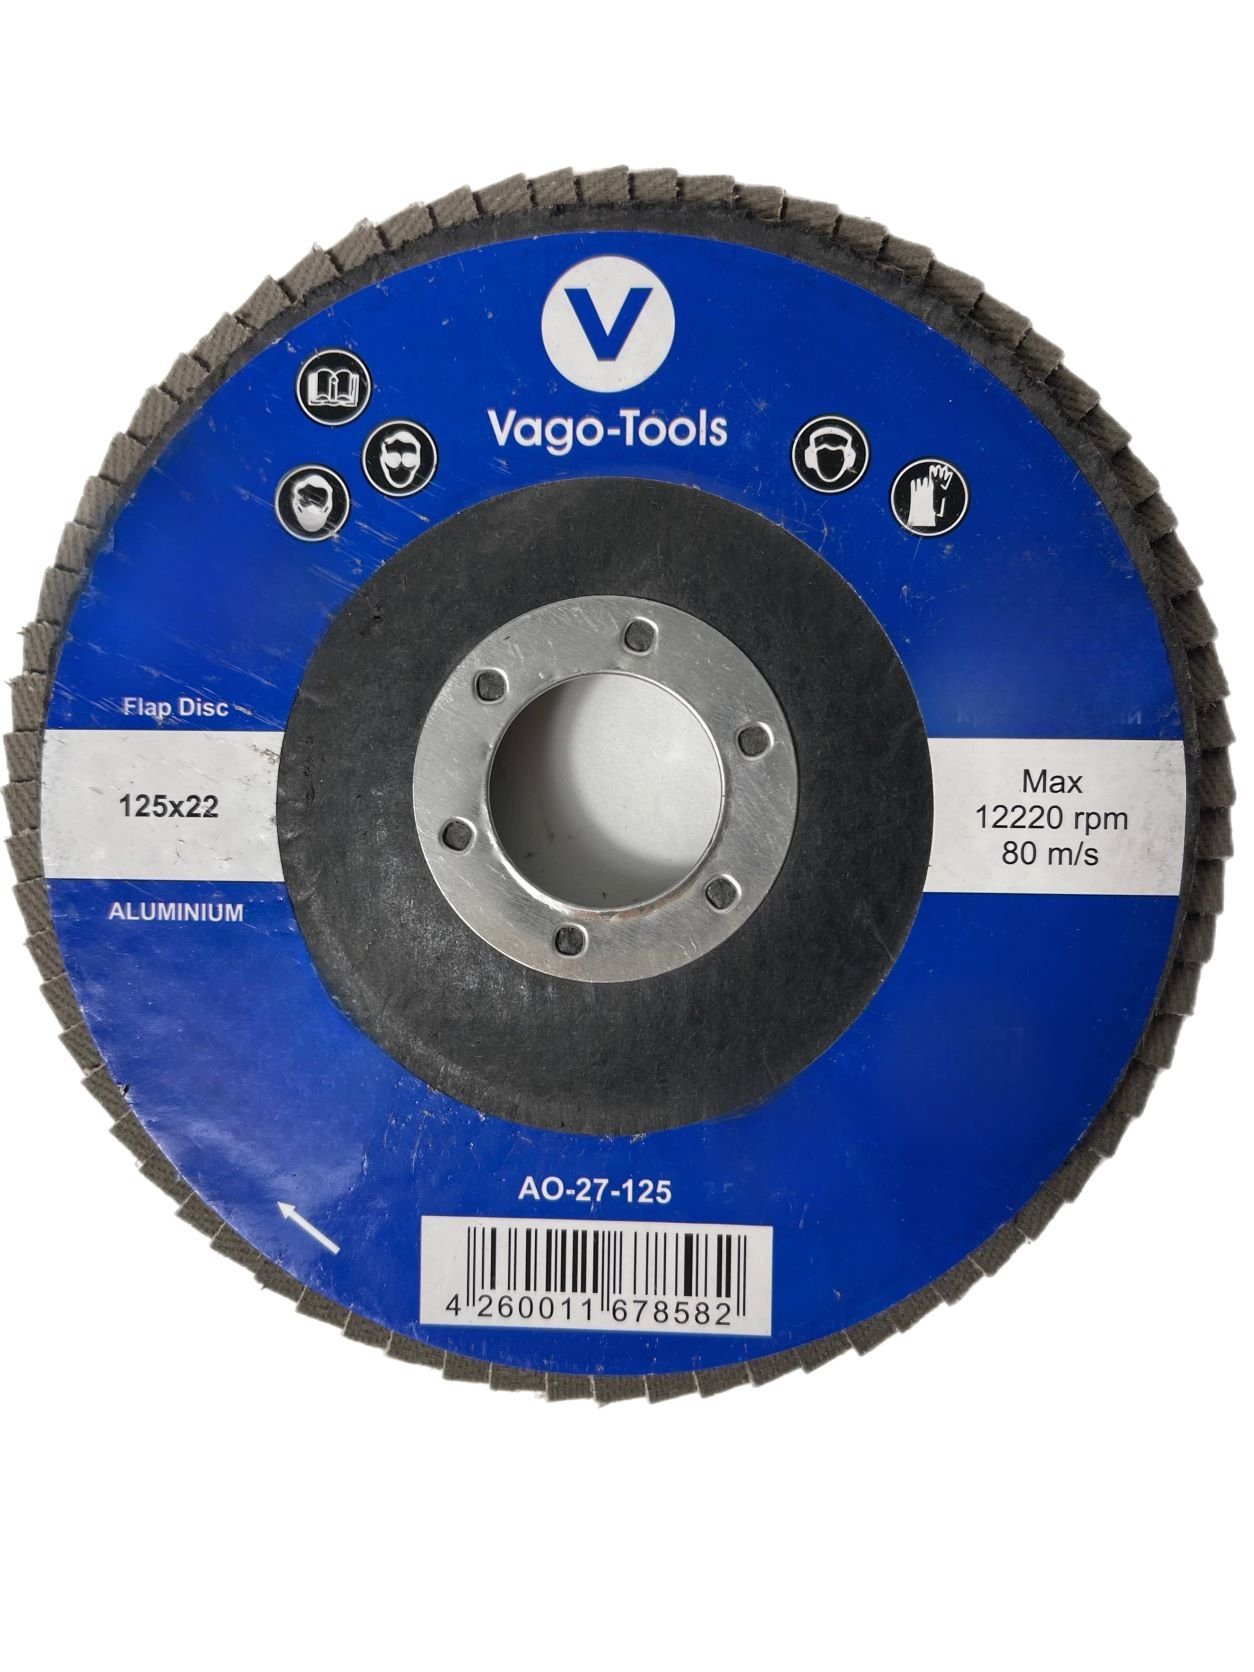 Fächerschleifscheiben VaGo-Tools Braun 125mm (Packung) flach Schleifscheibe P36 50x,